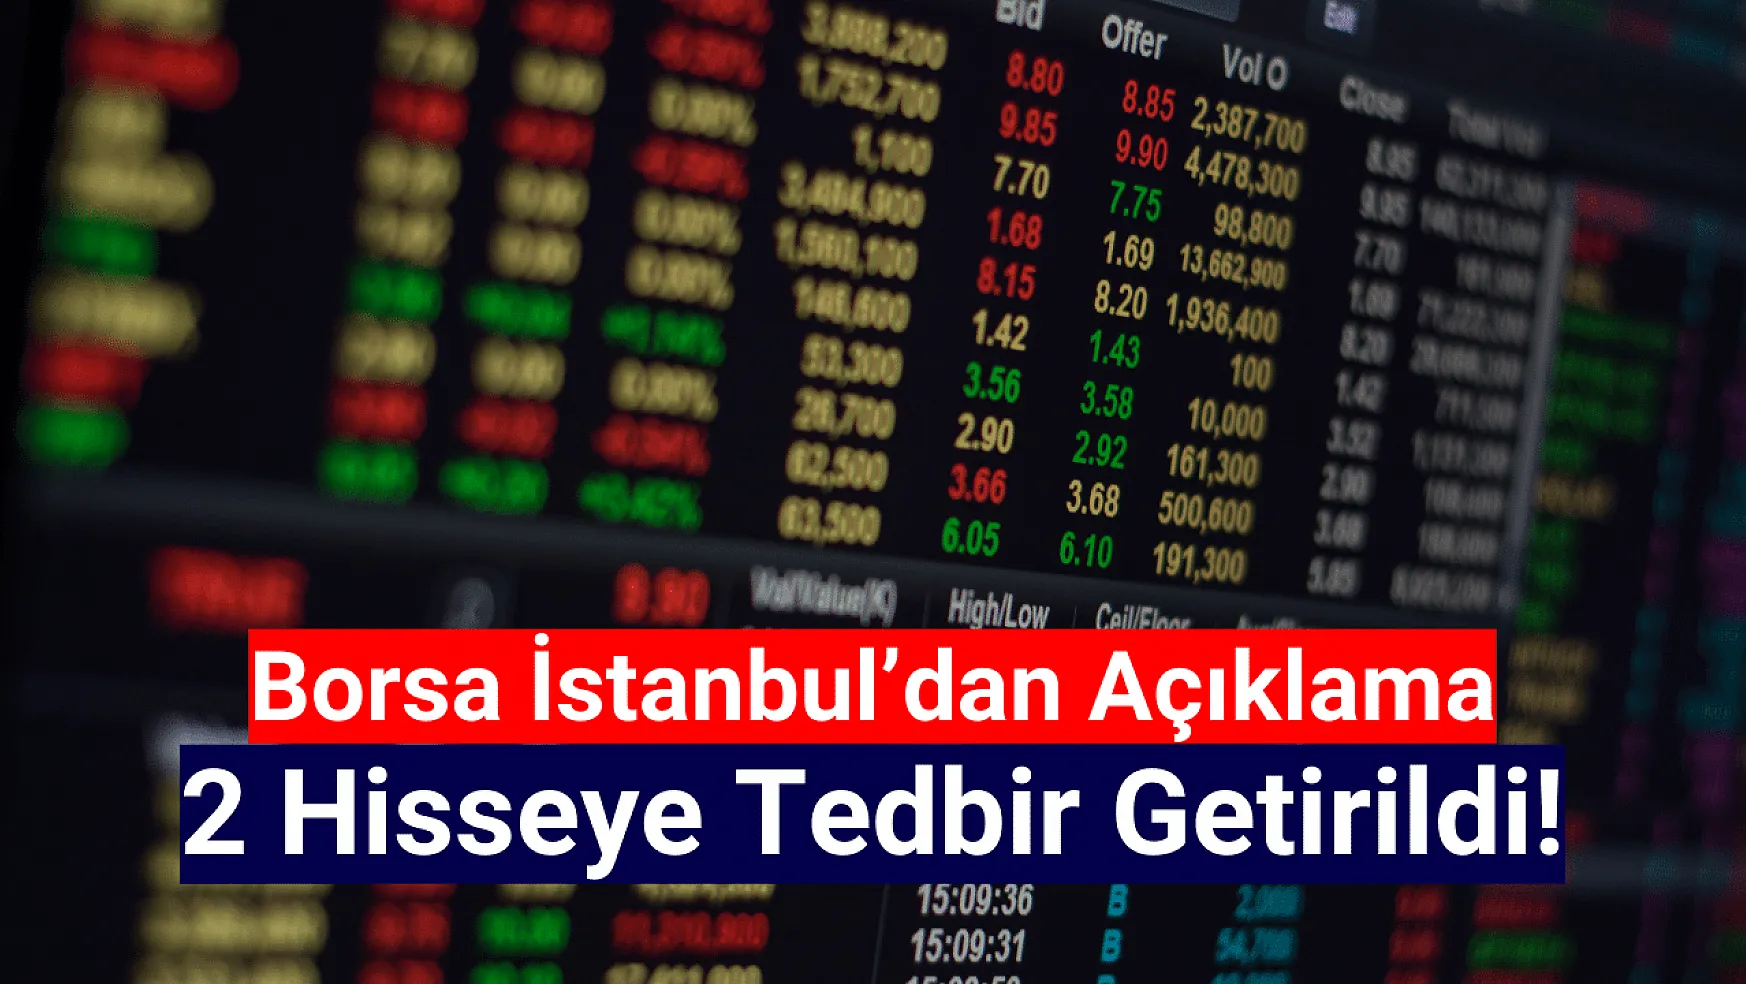 Borsa İstanbul'da 2 hisse tedbir kapsamına alındı!